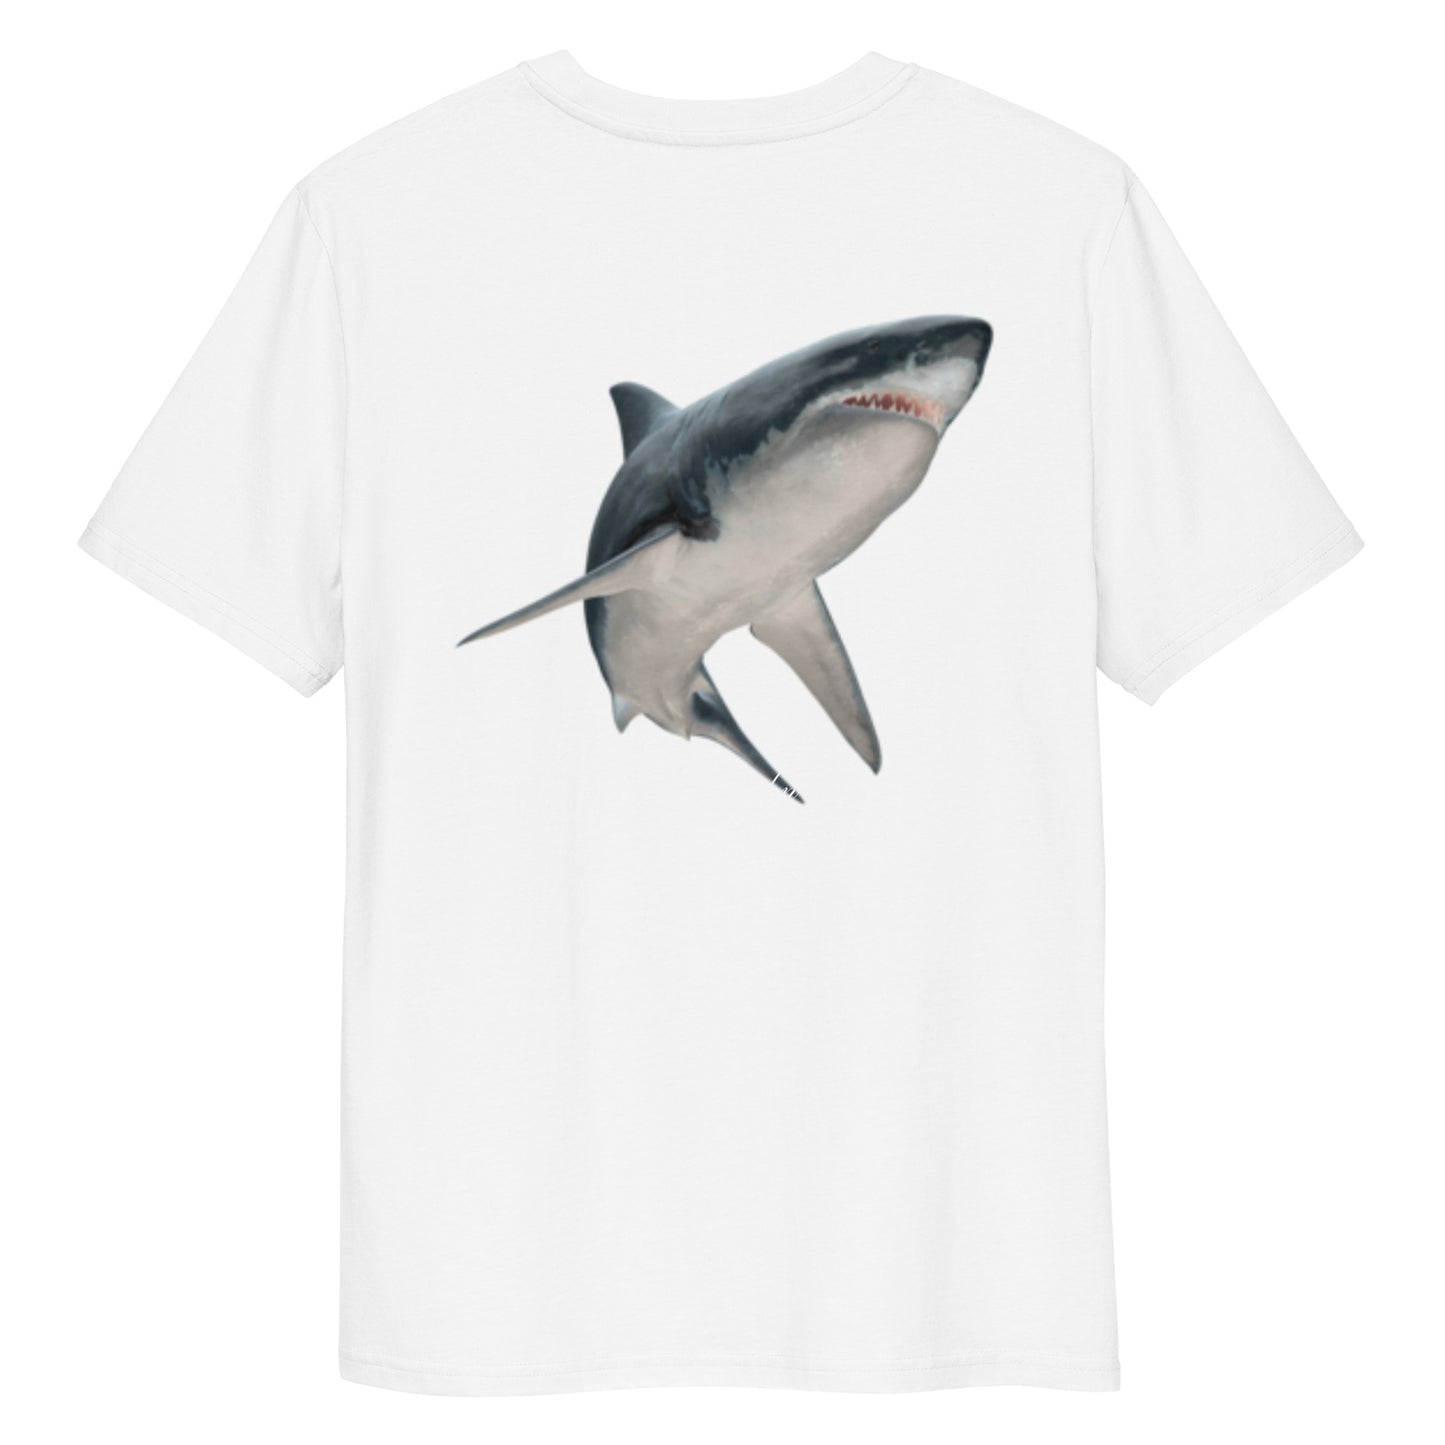 Ulli Hahn Shark Collection I T-Shirt